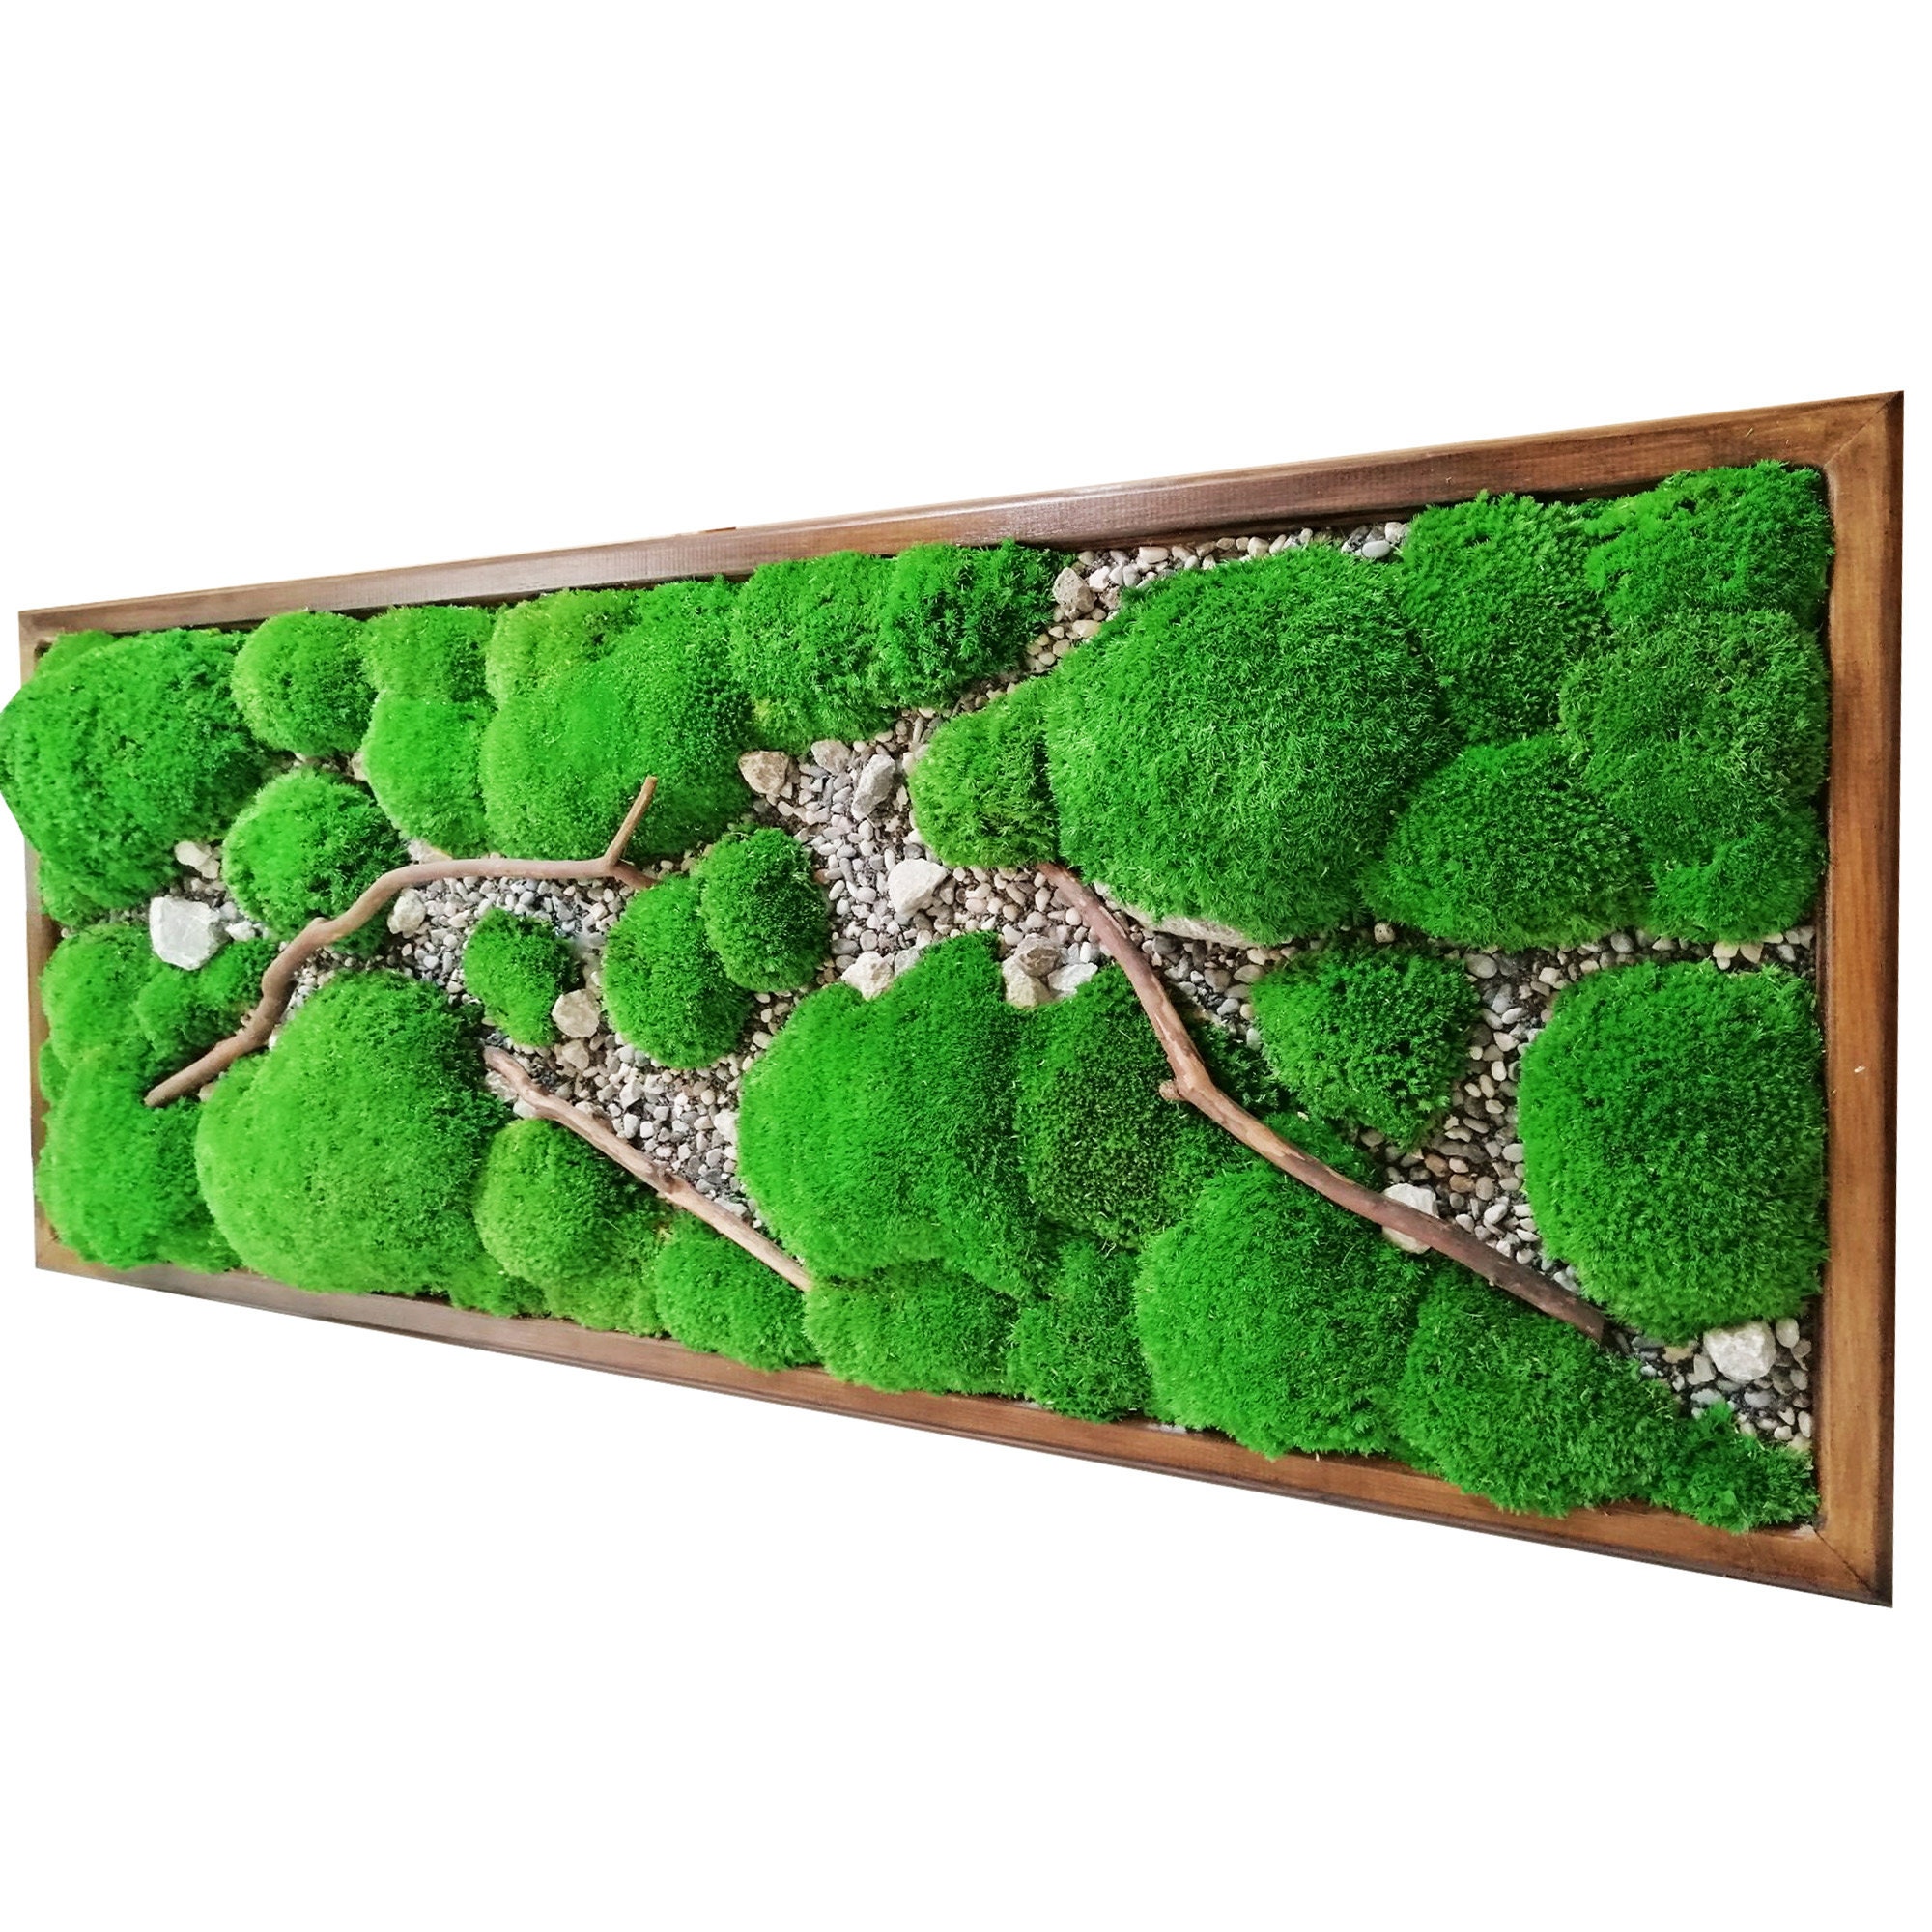 DIY Moss Art – Home Sweet Homes